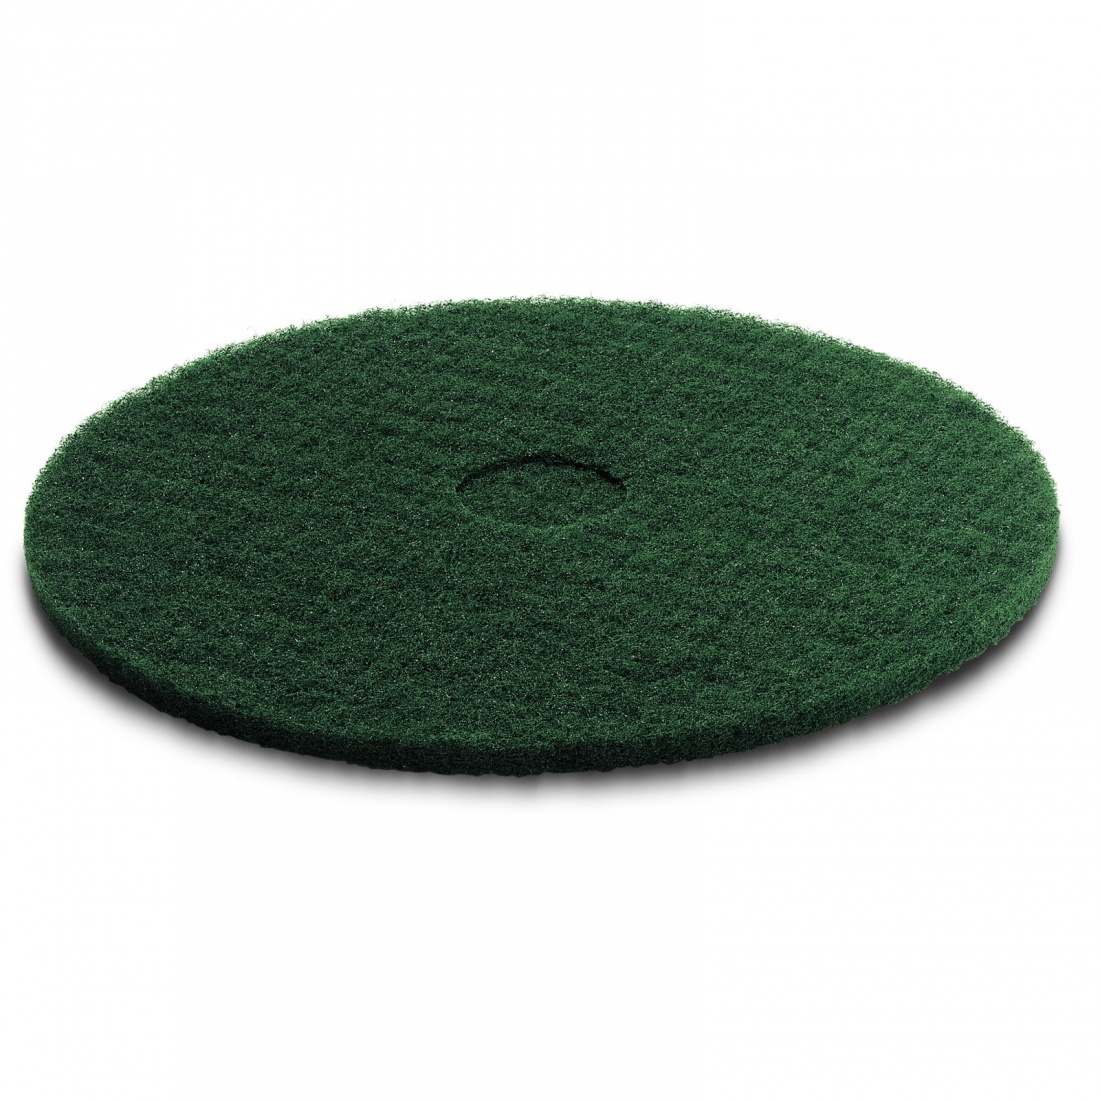 Пад, средне жесткий, зеленый, 330 mm